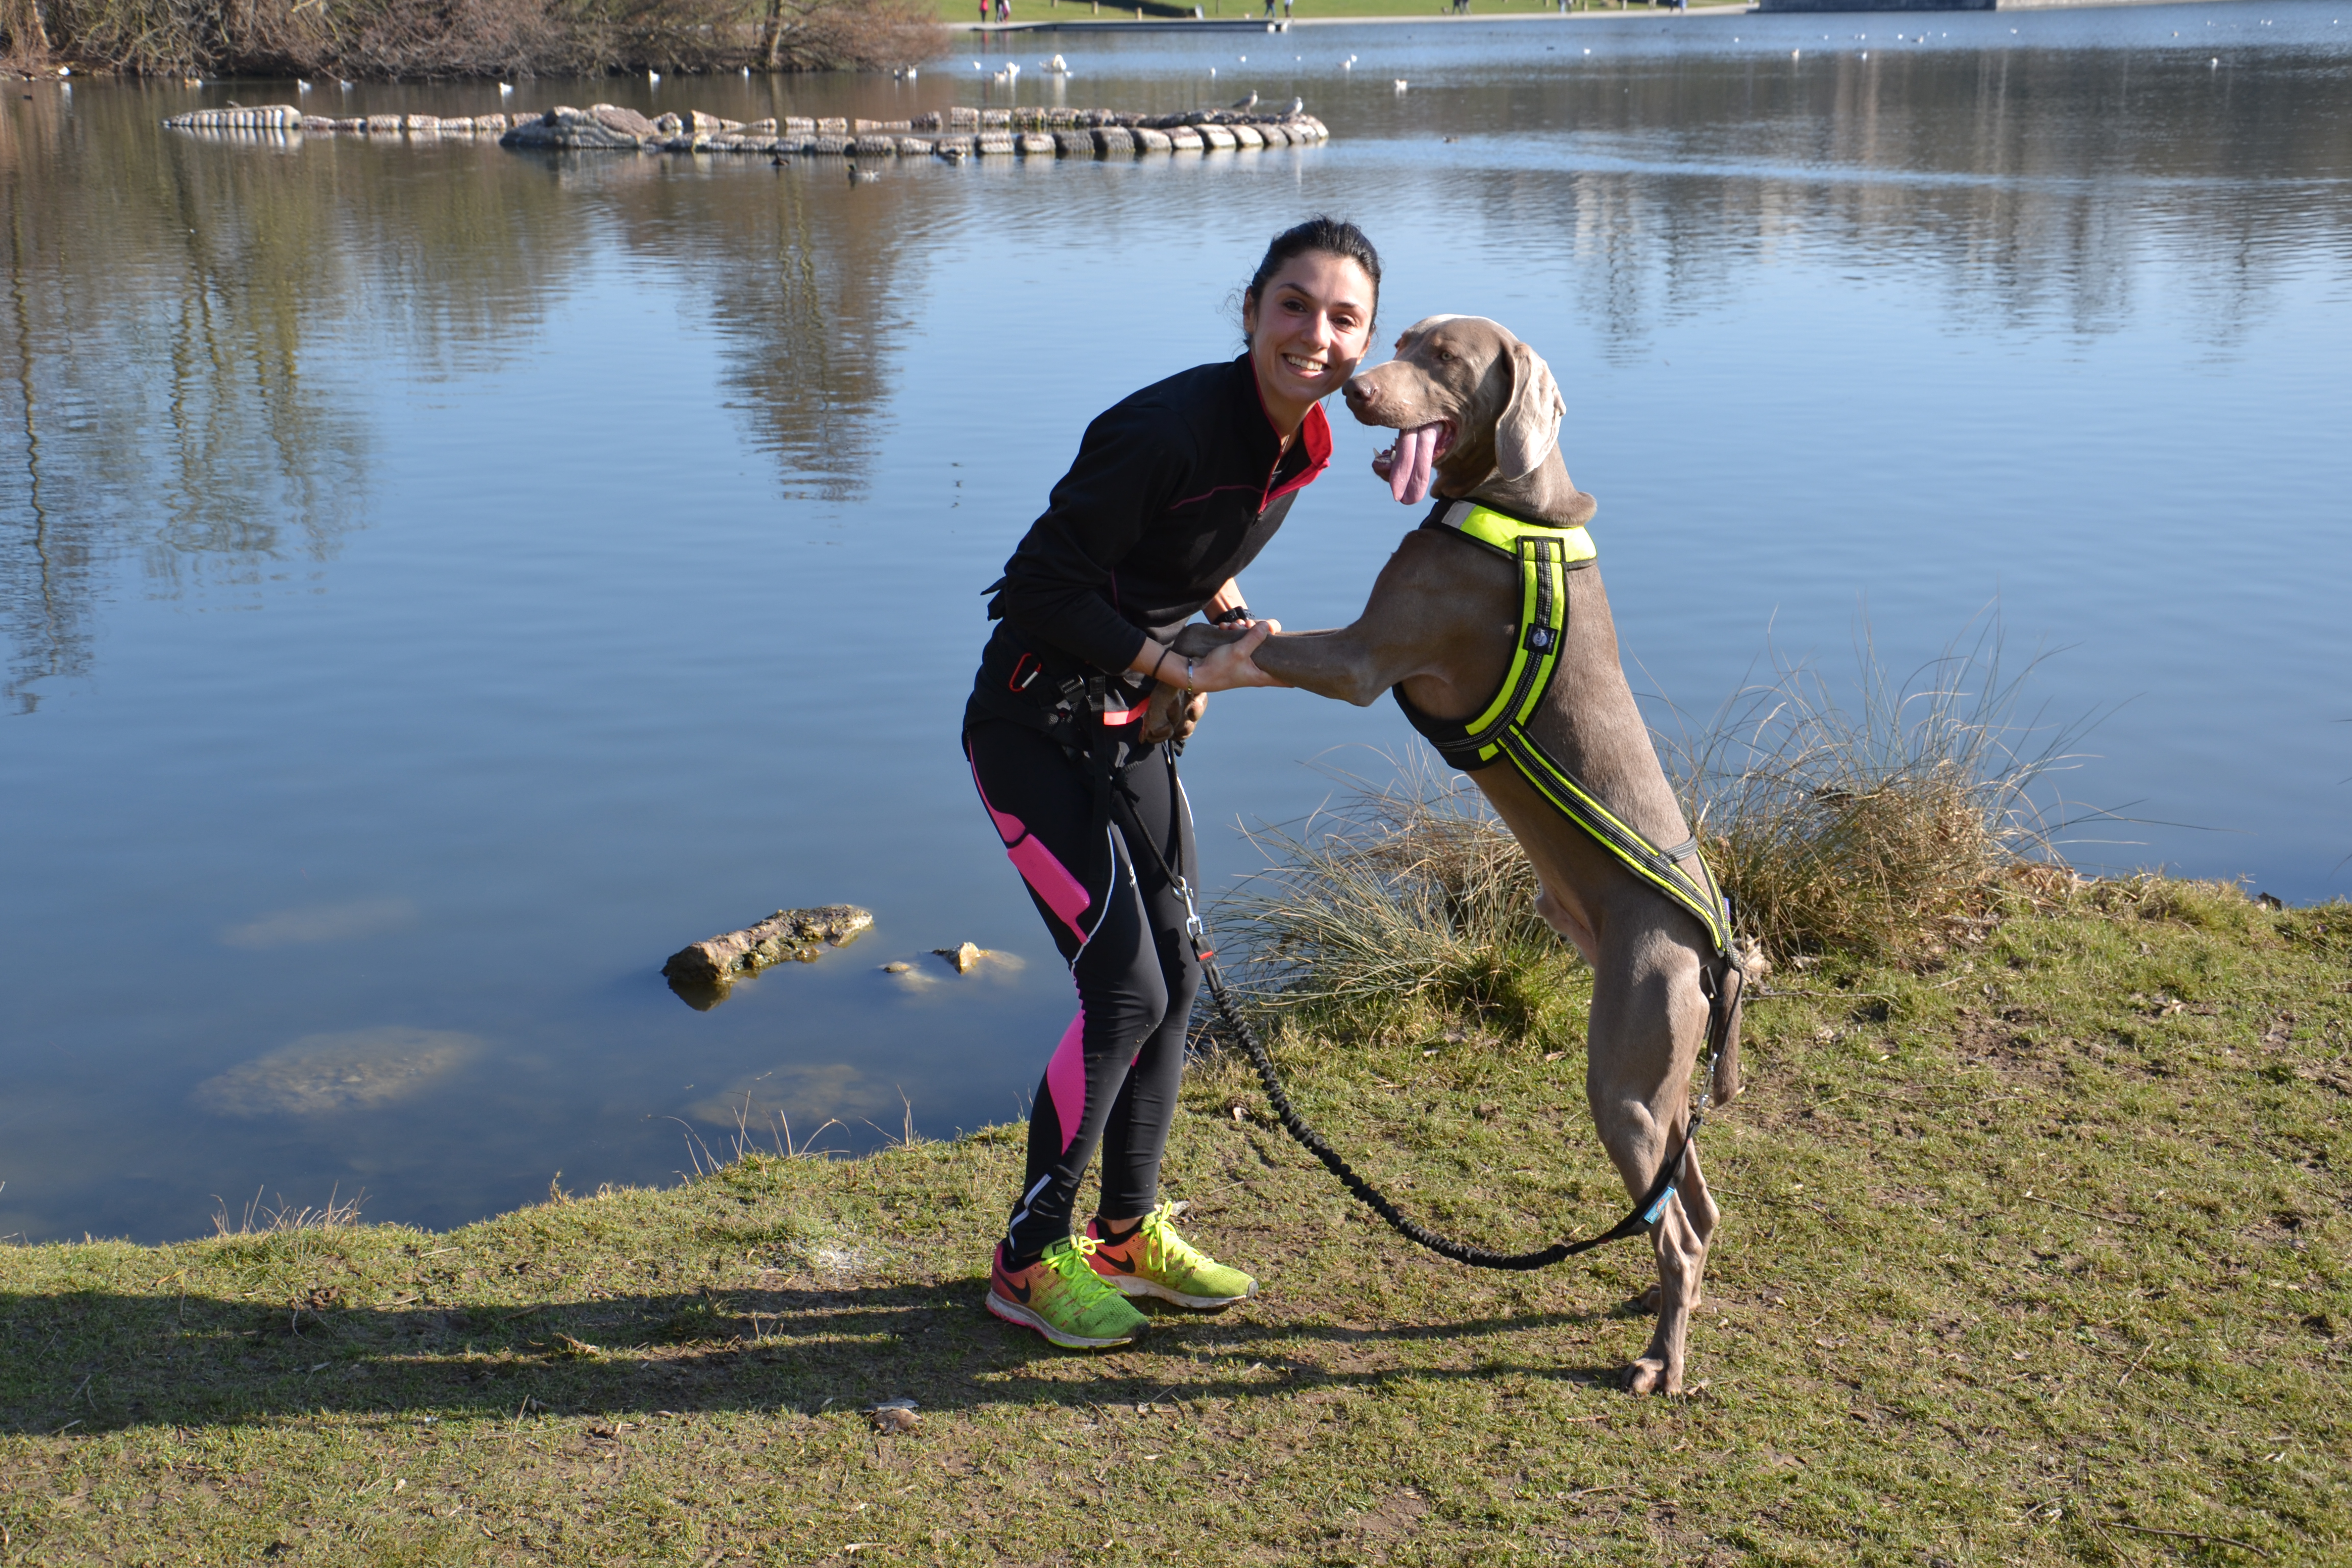 Canicross : comment faire du sport avec son chien ?, Animalerie